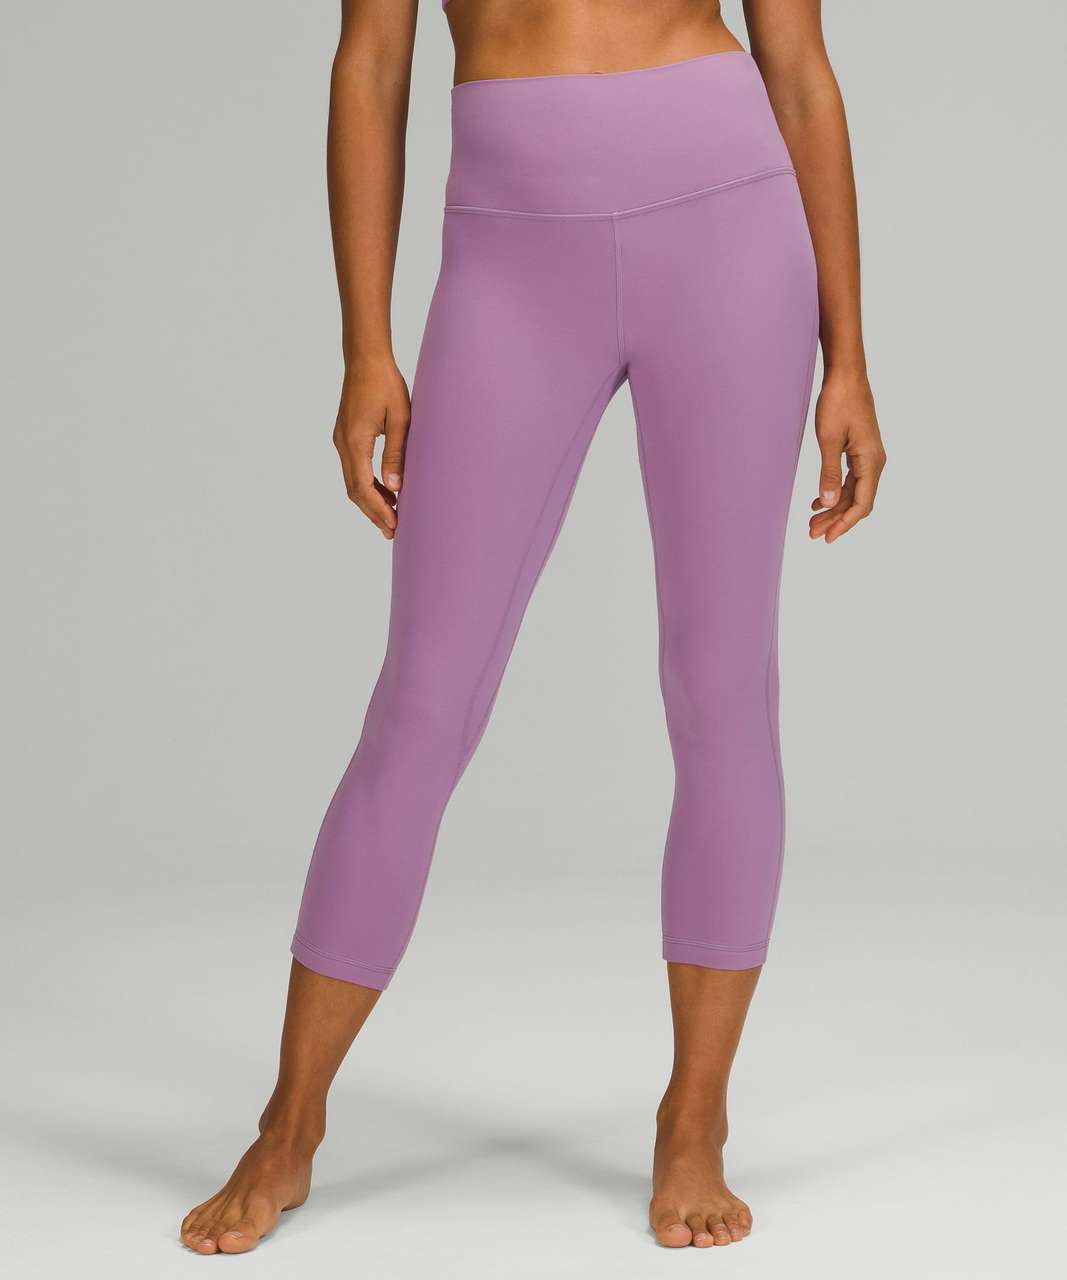 Lululemon NWOT Women's Leggings Purple Size 8 - $38 (62% Off